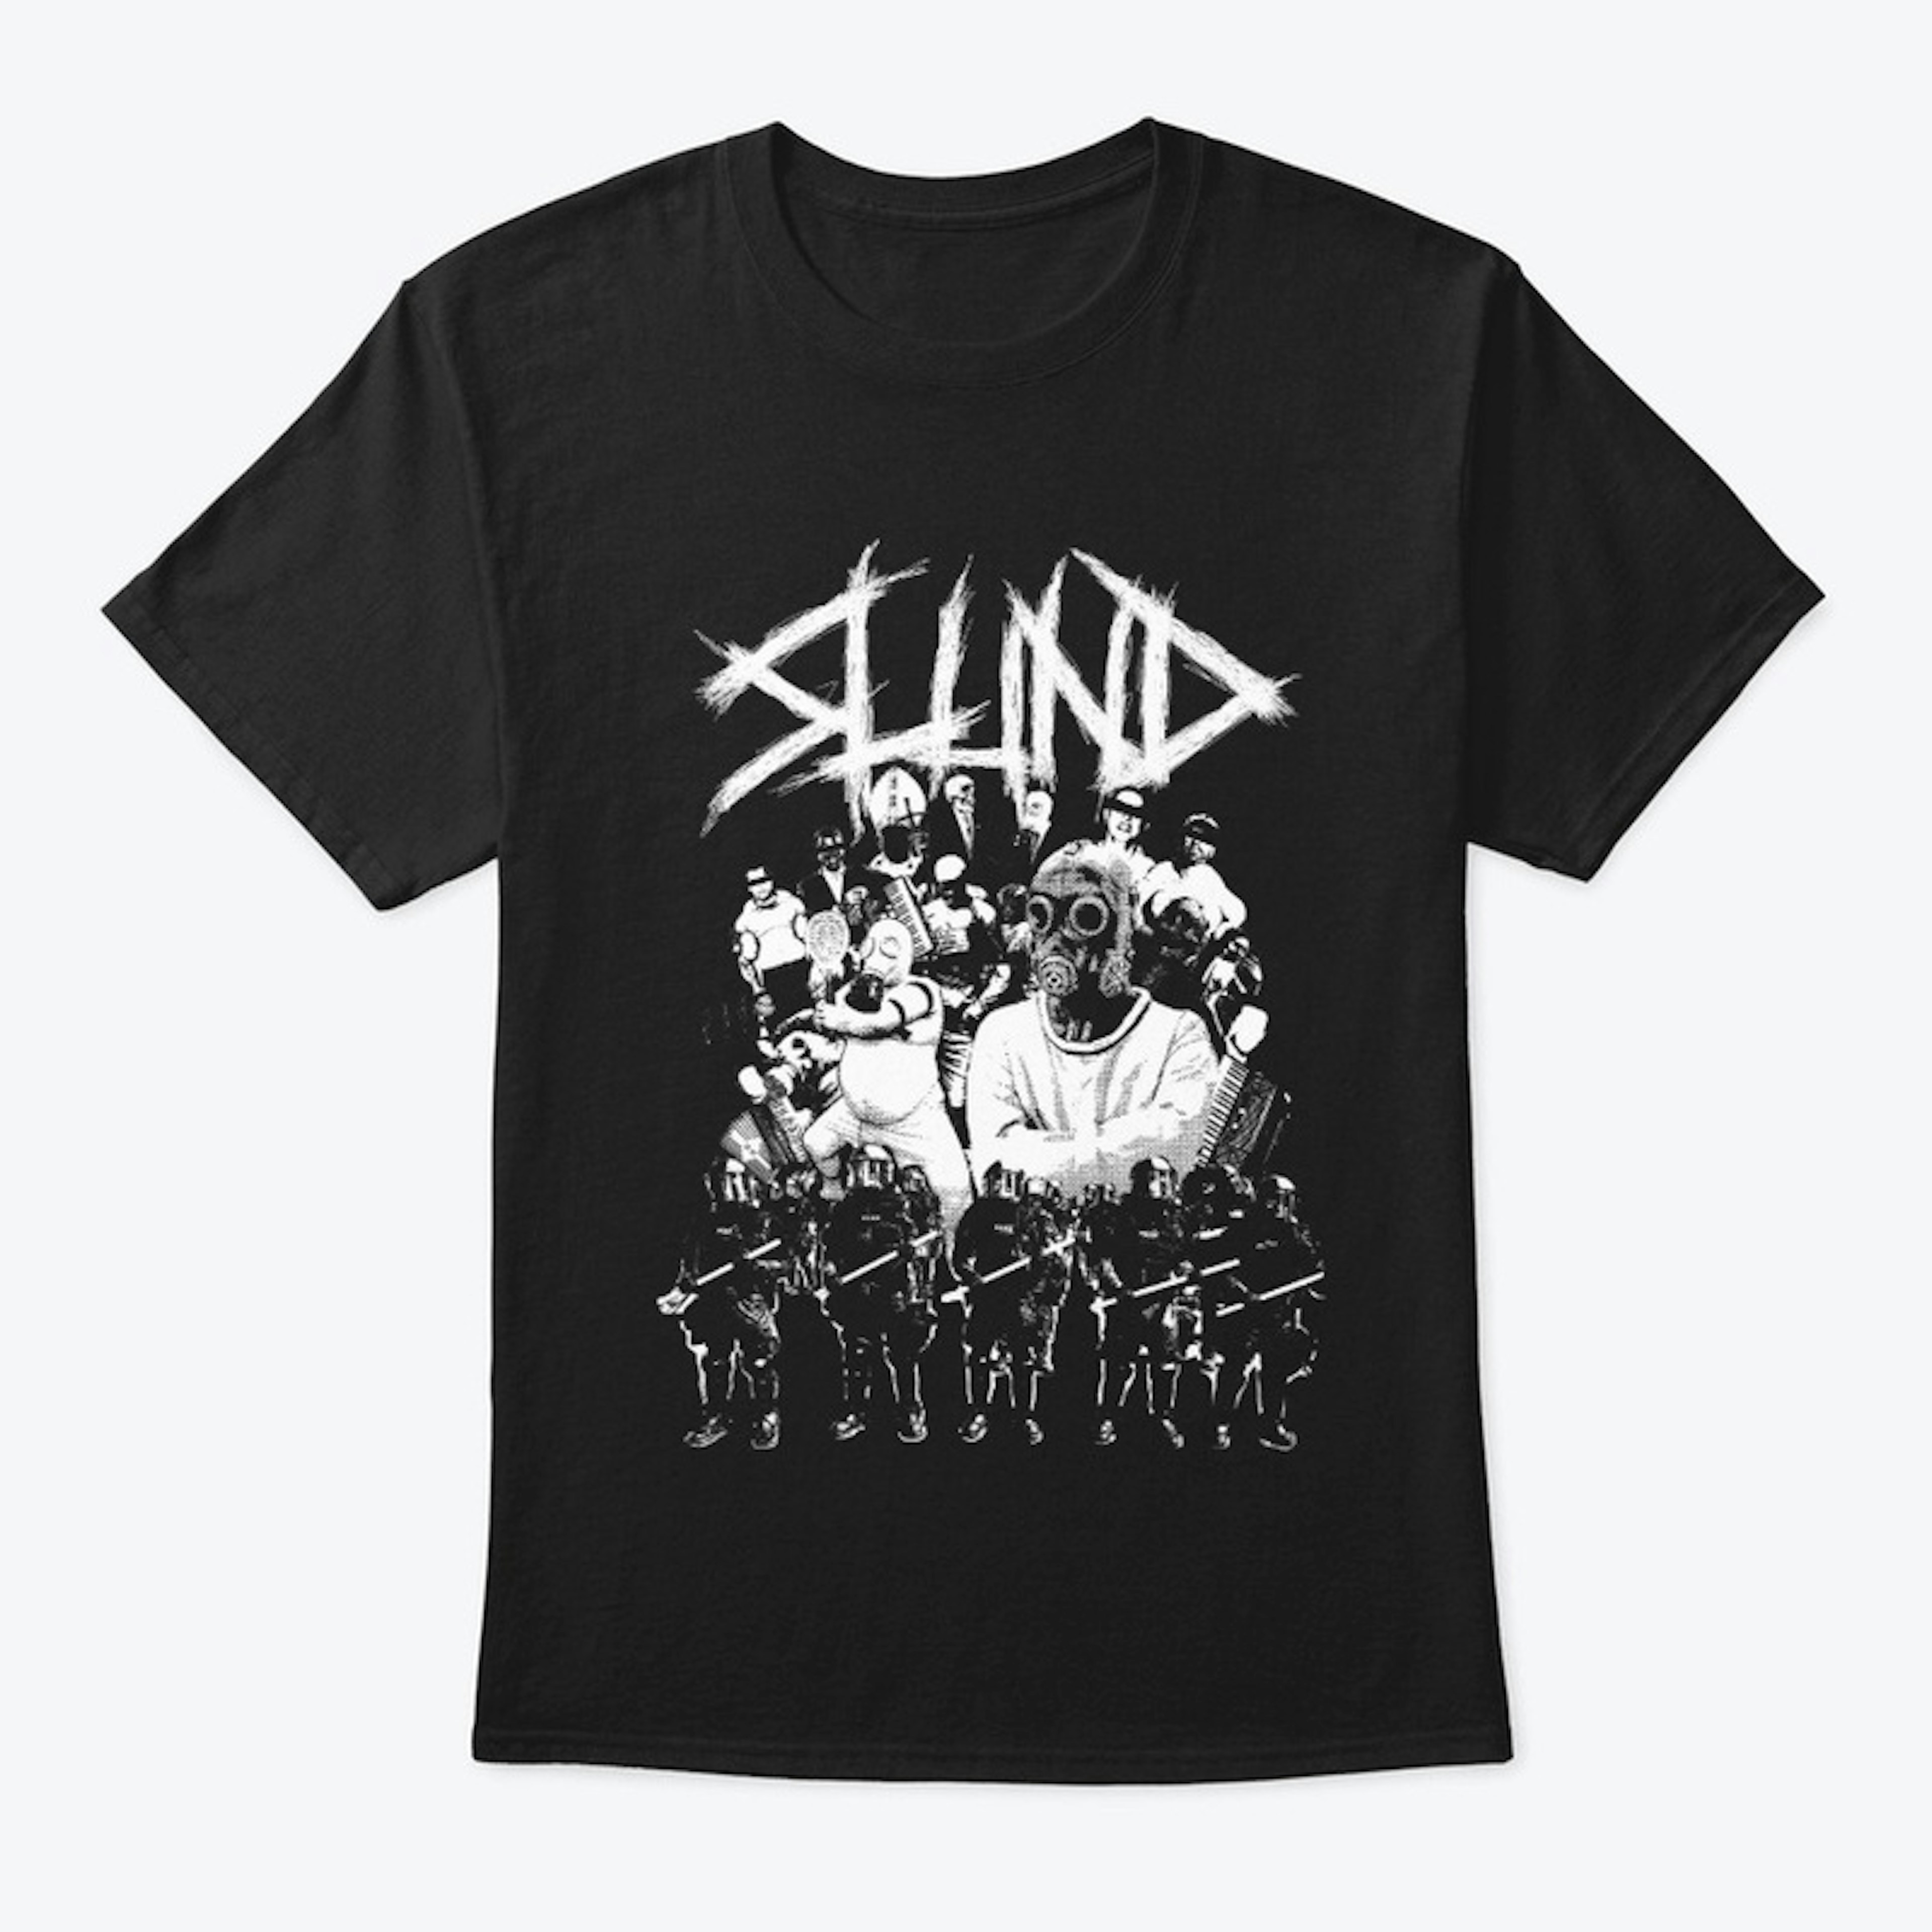 Slund 'Em All shirt